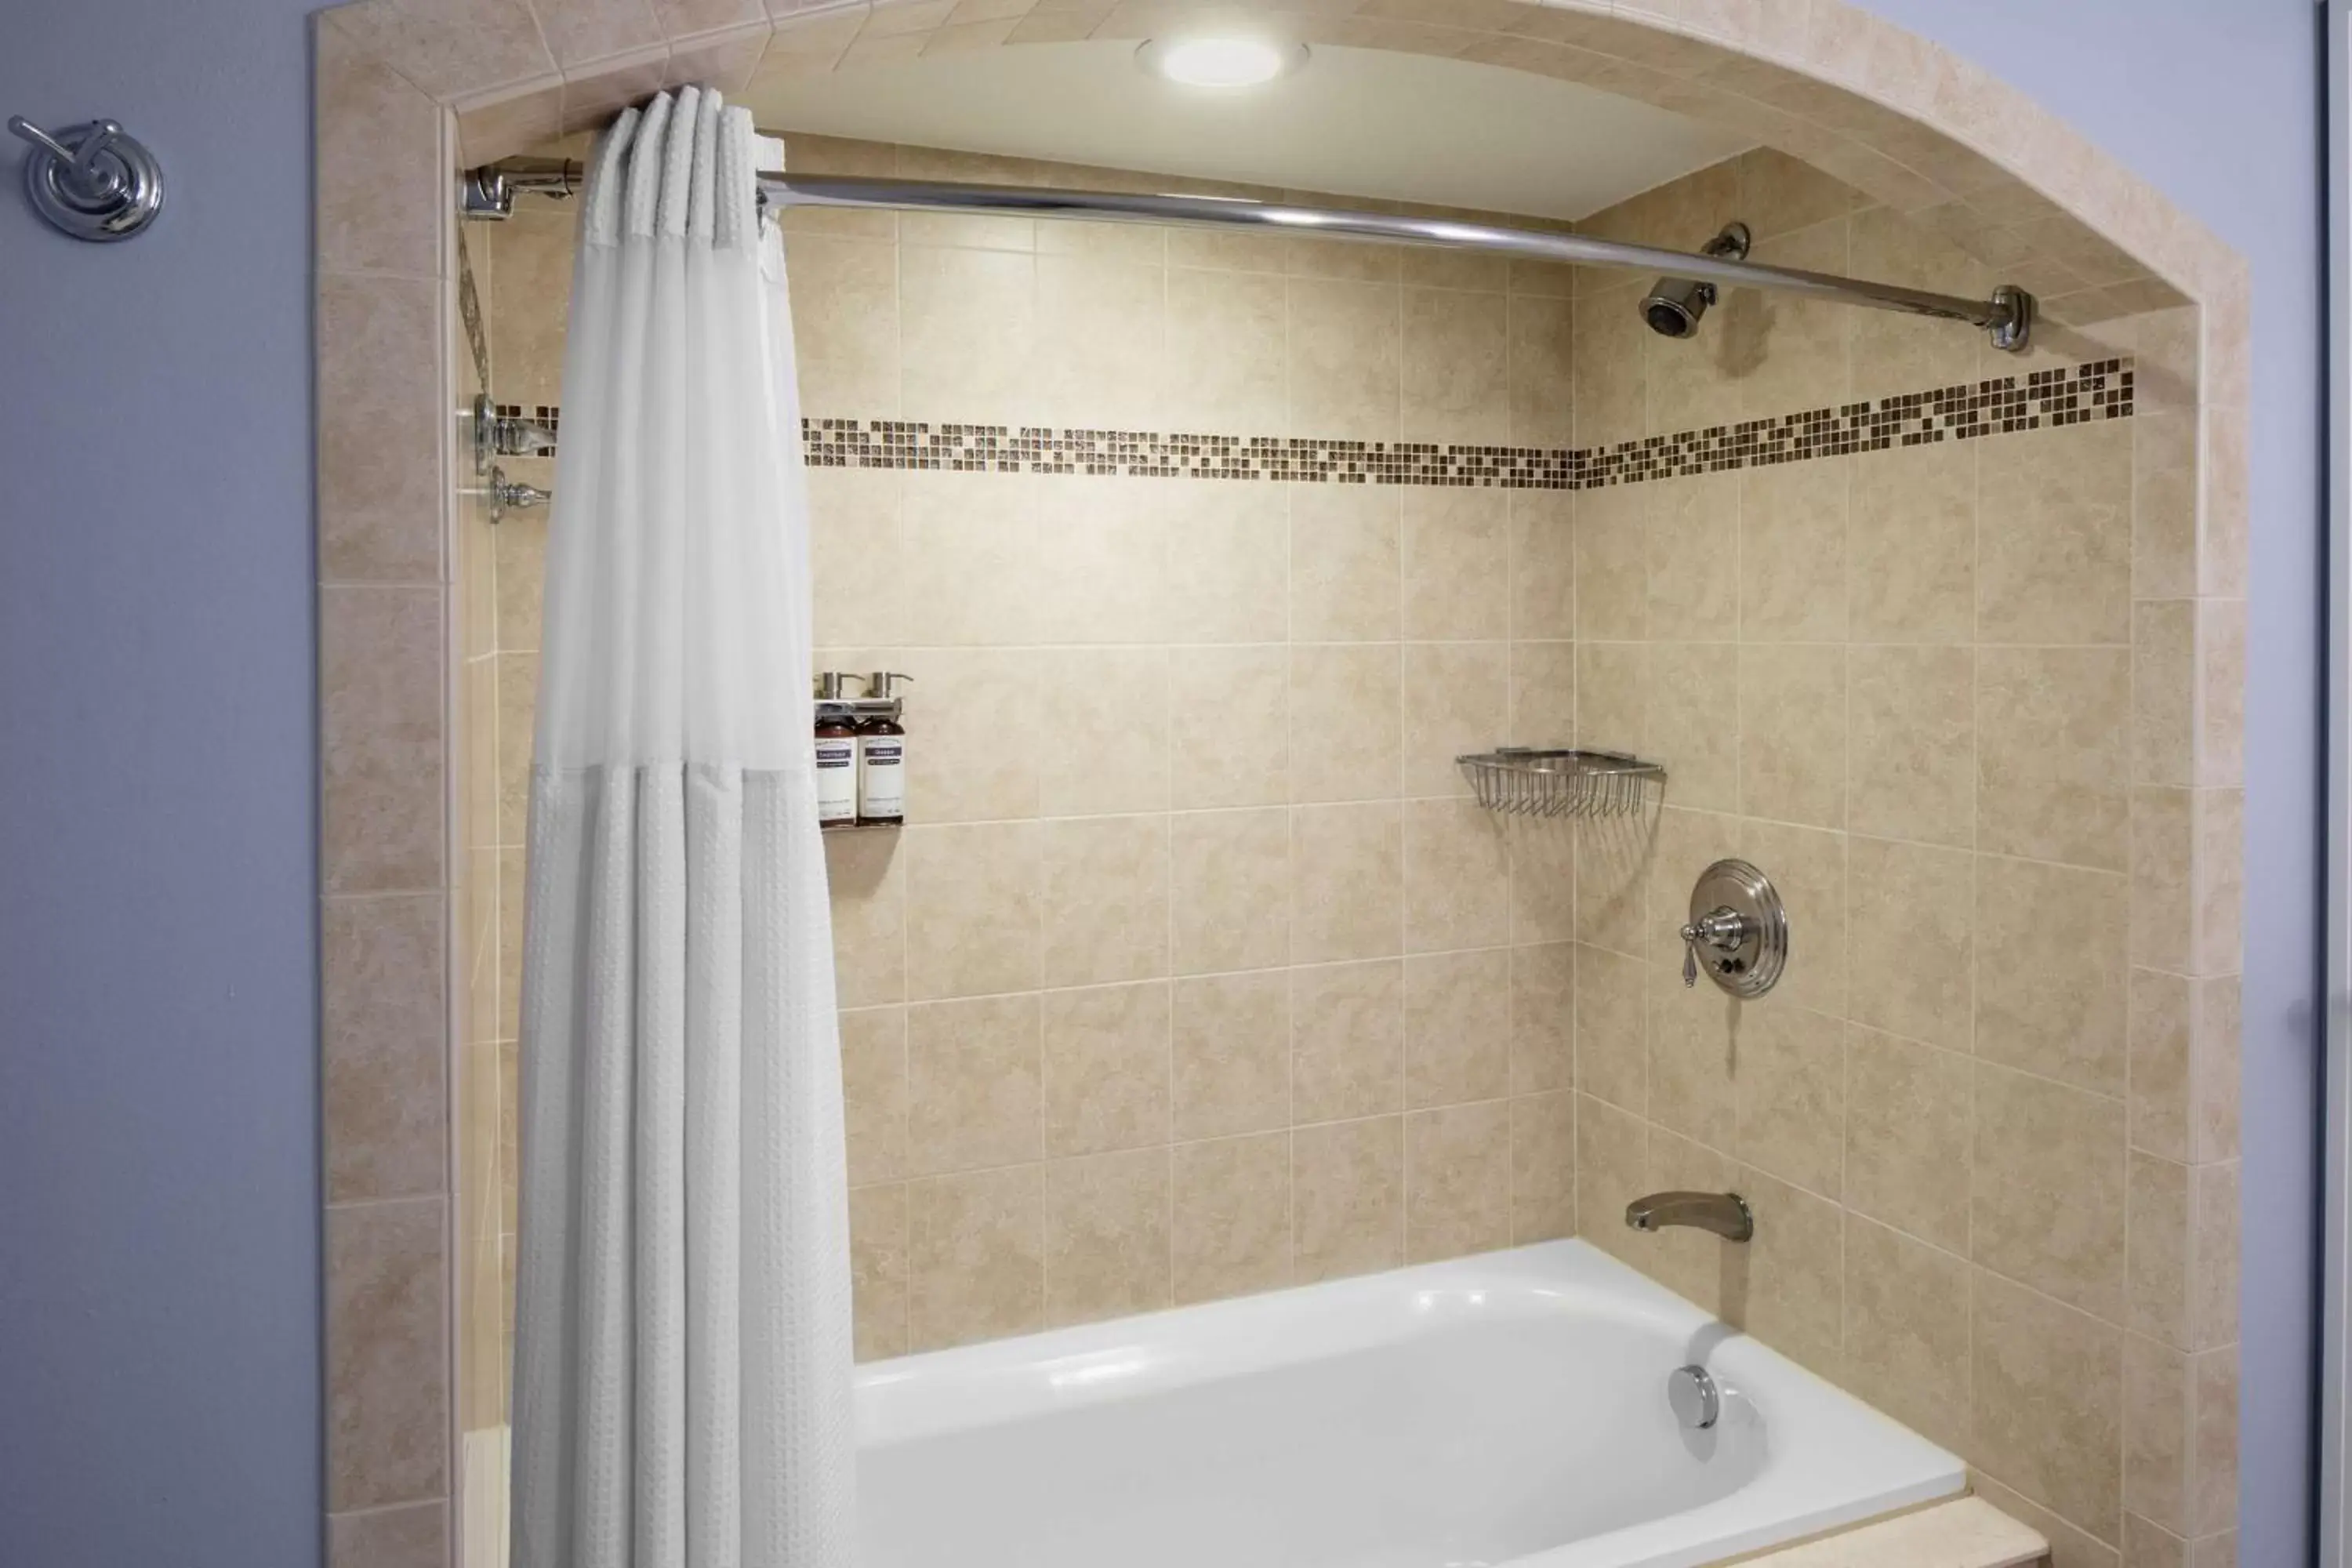 Bathroom in Hyatt Regency Clearwater Beach Resort & Spa